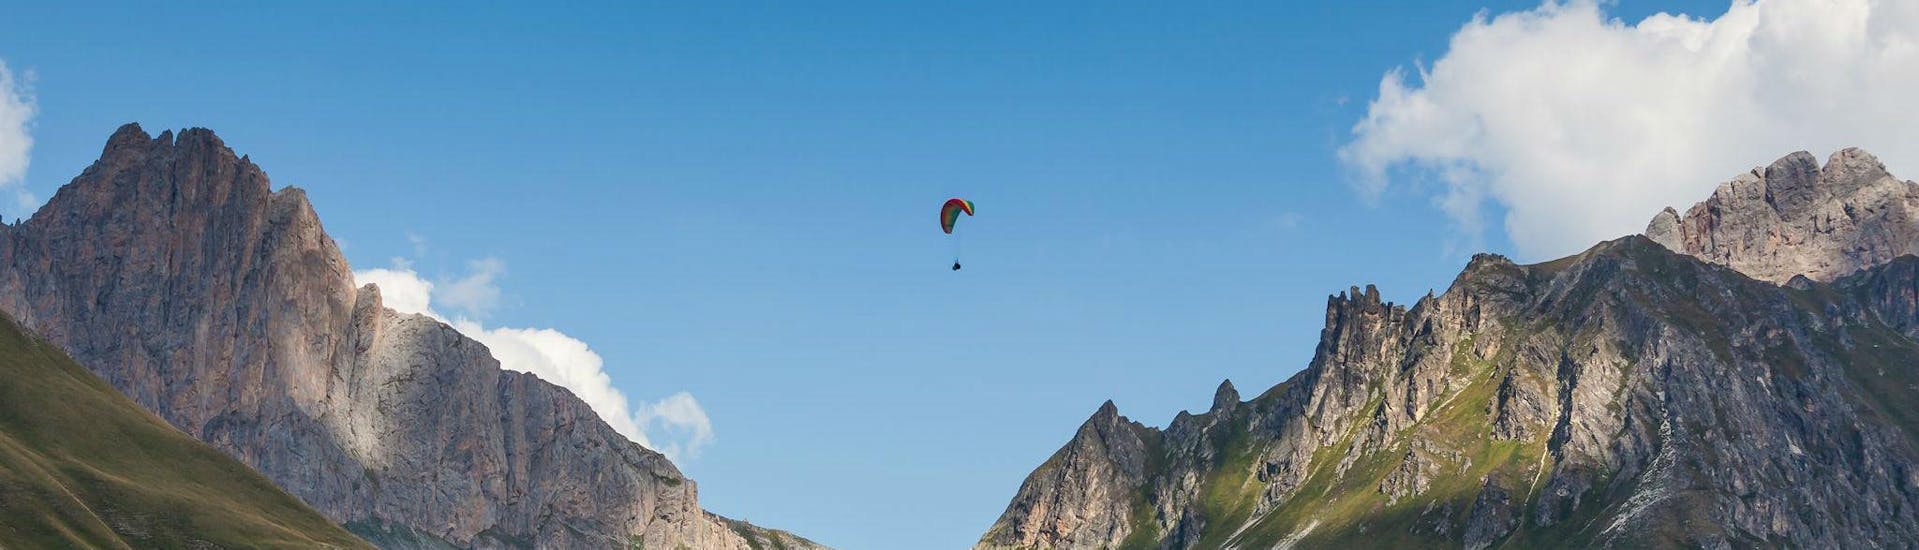 Un pilote de parapente d'Emotion'Air effectue un vol en tandem parapente acrobatique depuis le Col du Granon.